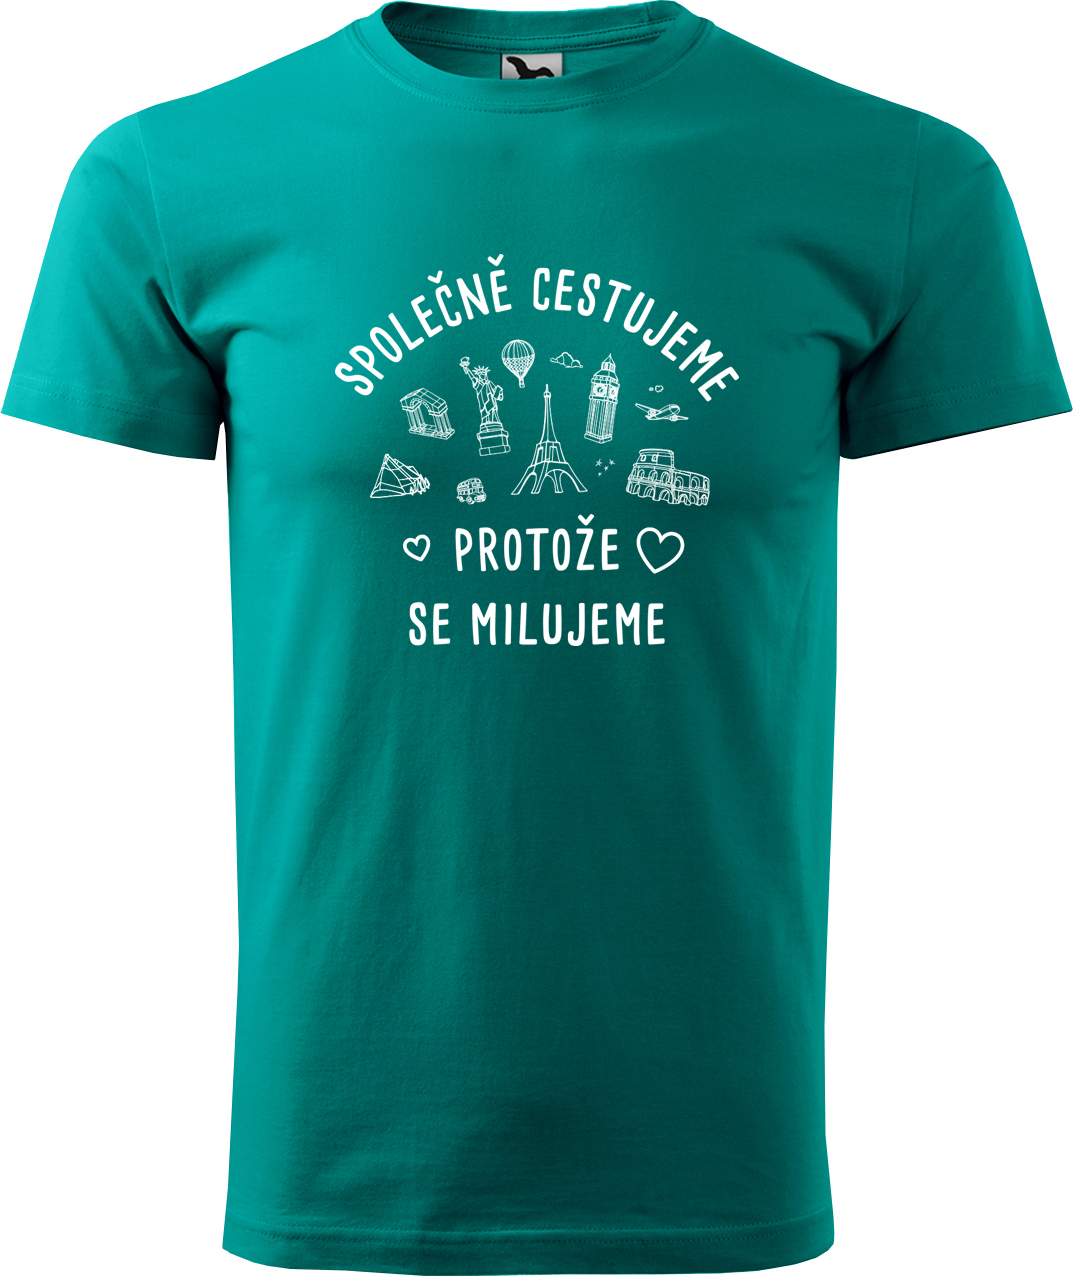 Pánské cestovatelské tričko - Společně cestujeme protože se milujeme Velikost: M, Barva: Emerald (19), Střih: pánský